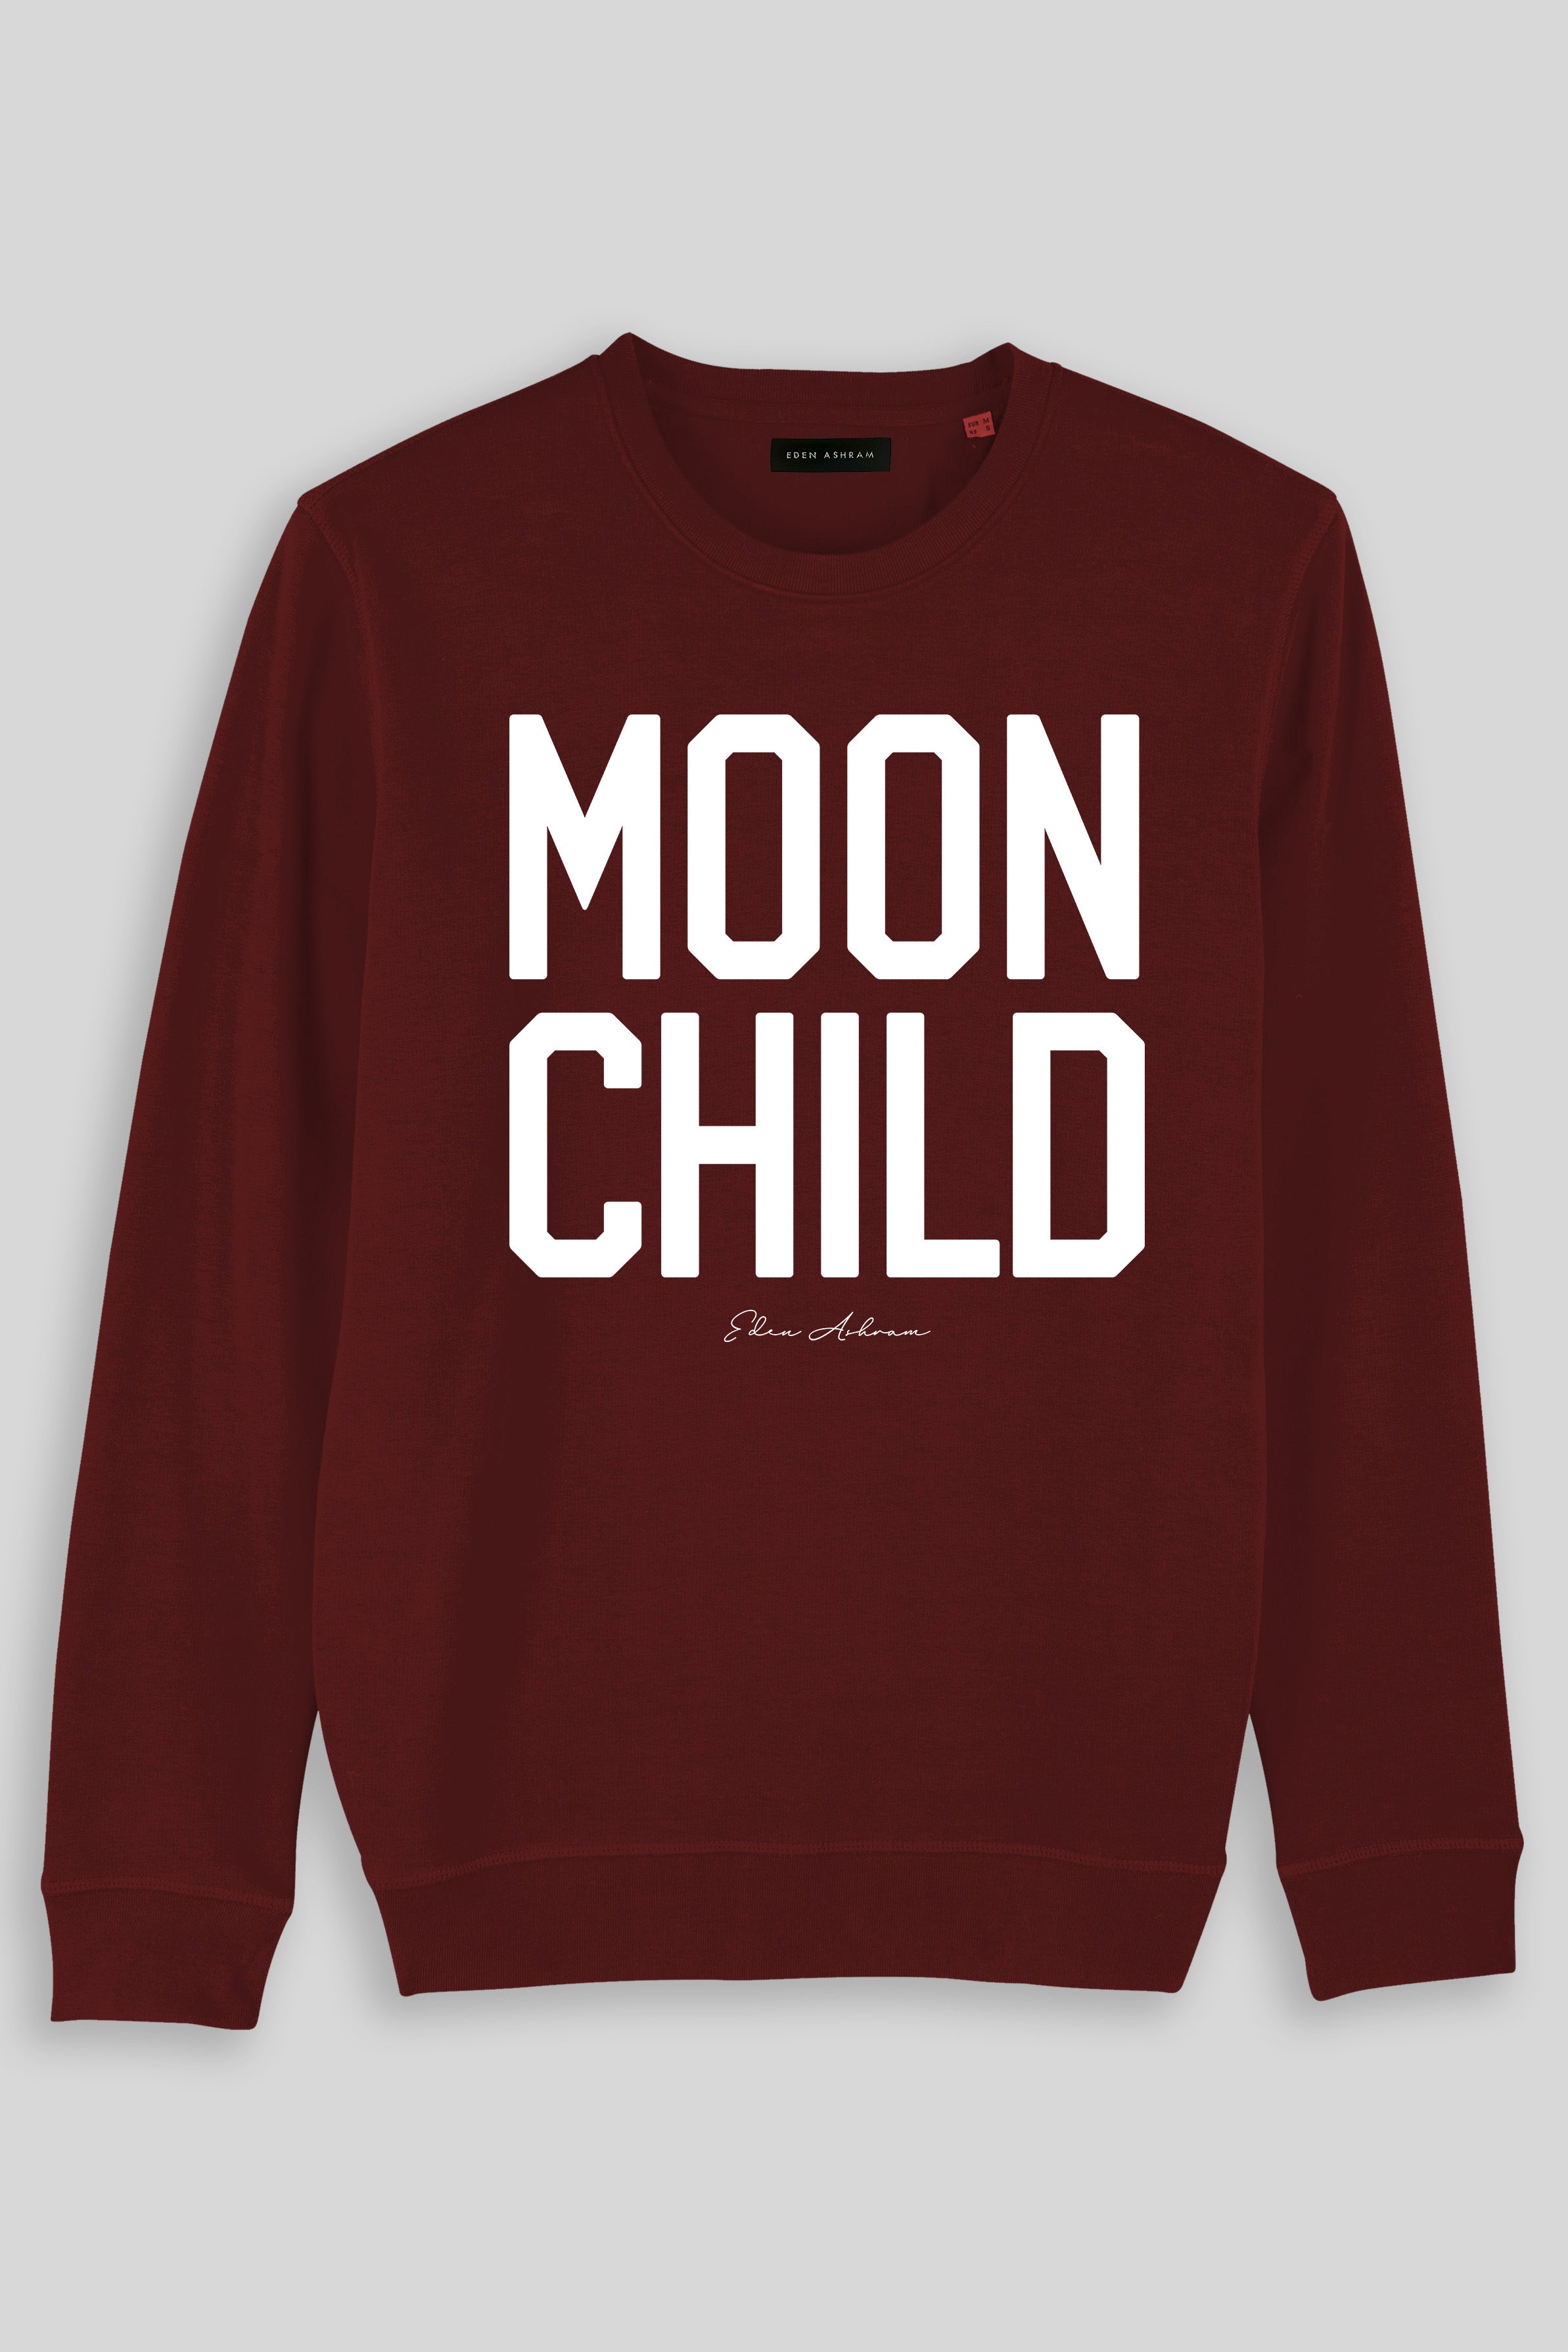 Eden Ashram Moon Child Premium Crew Neck Sweatshirt Burgundy